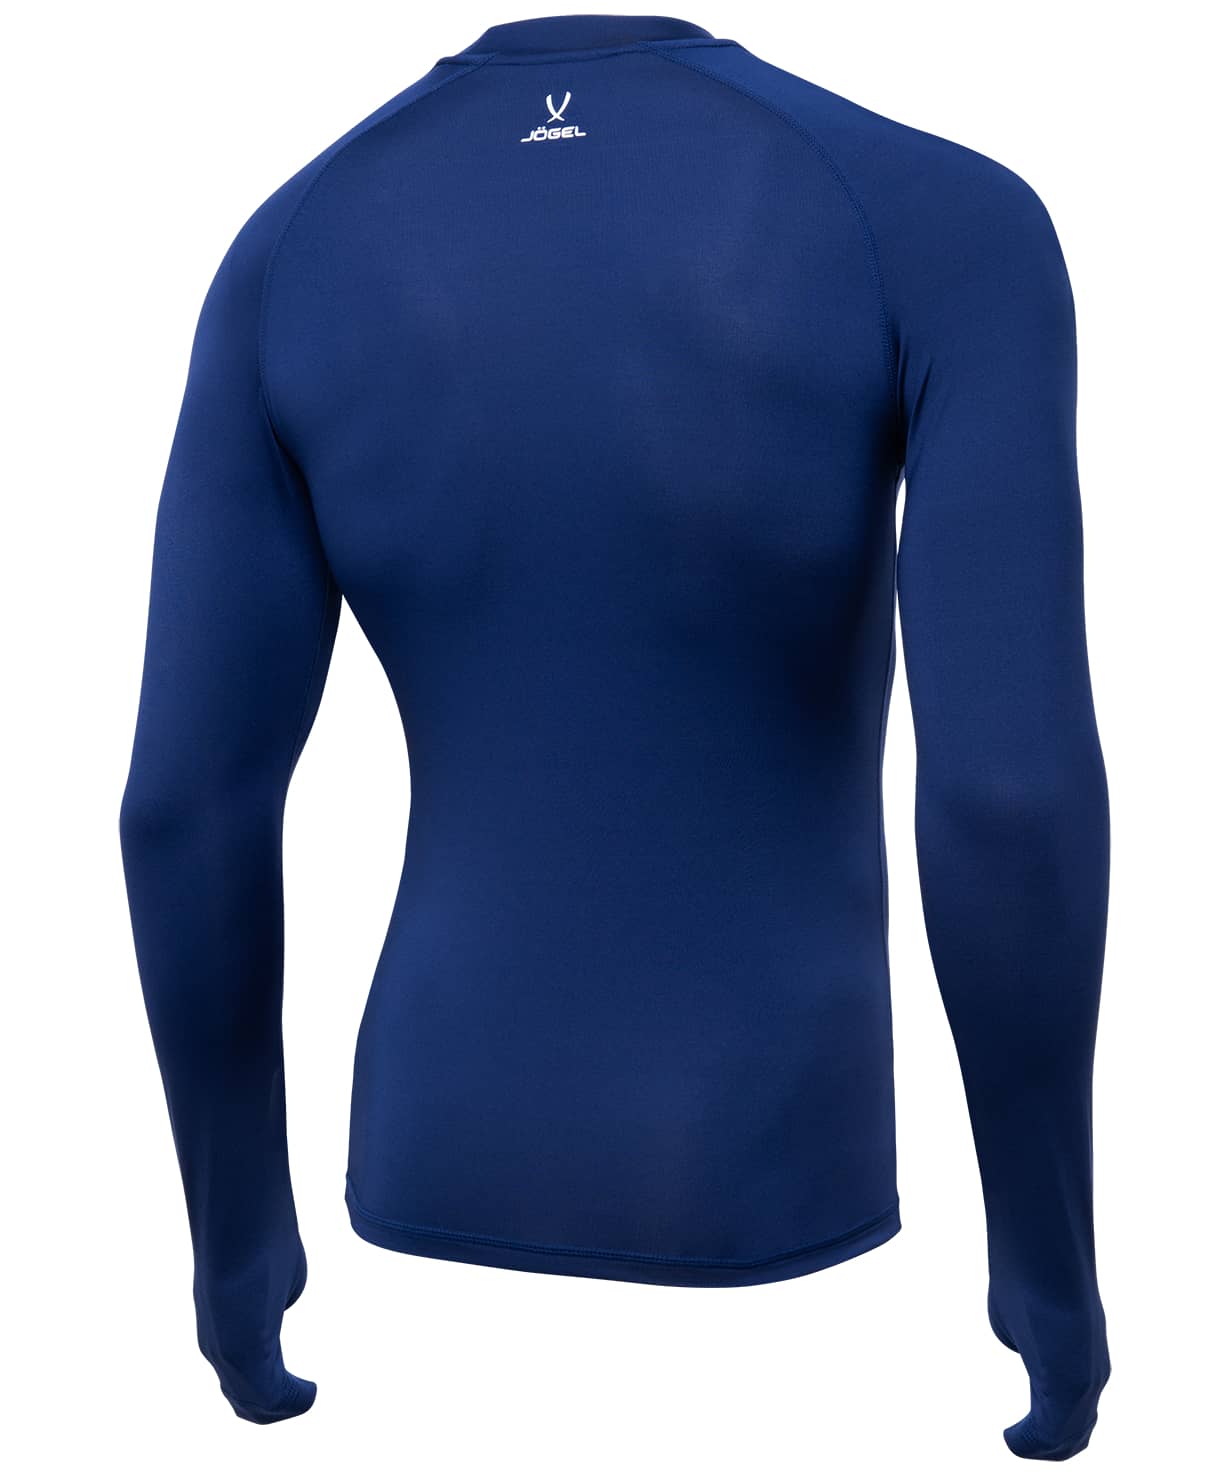 фото Jögel футболка компрессионная с длинным рукавом Camp PerFormDRY Top LS, темно-синий Football-54 